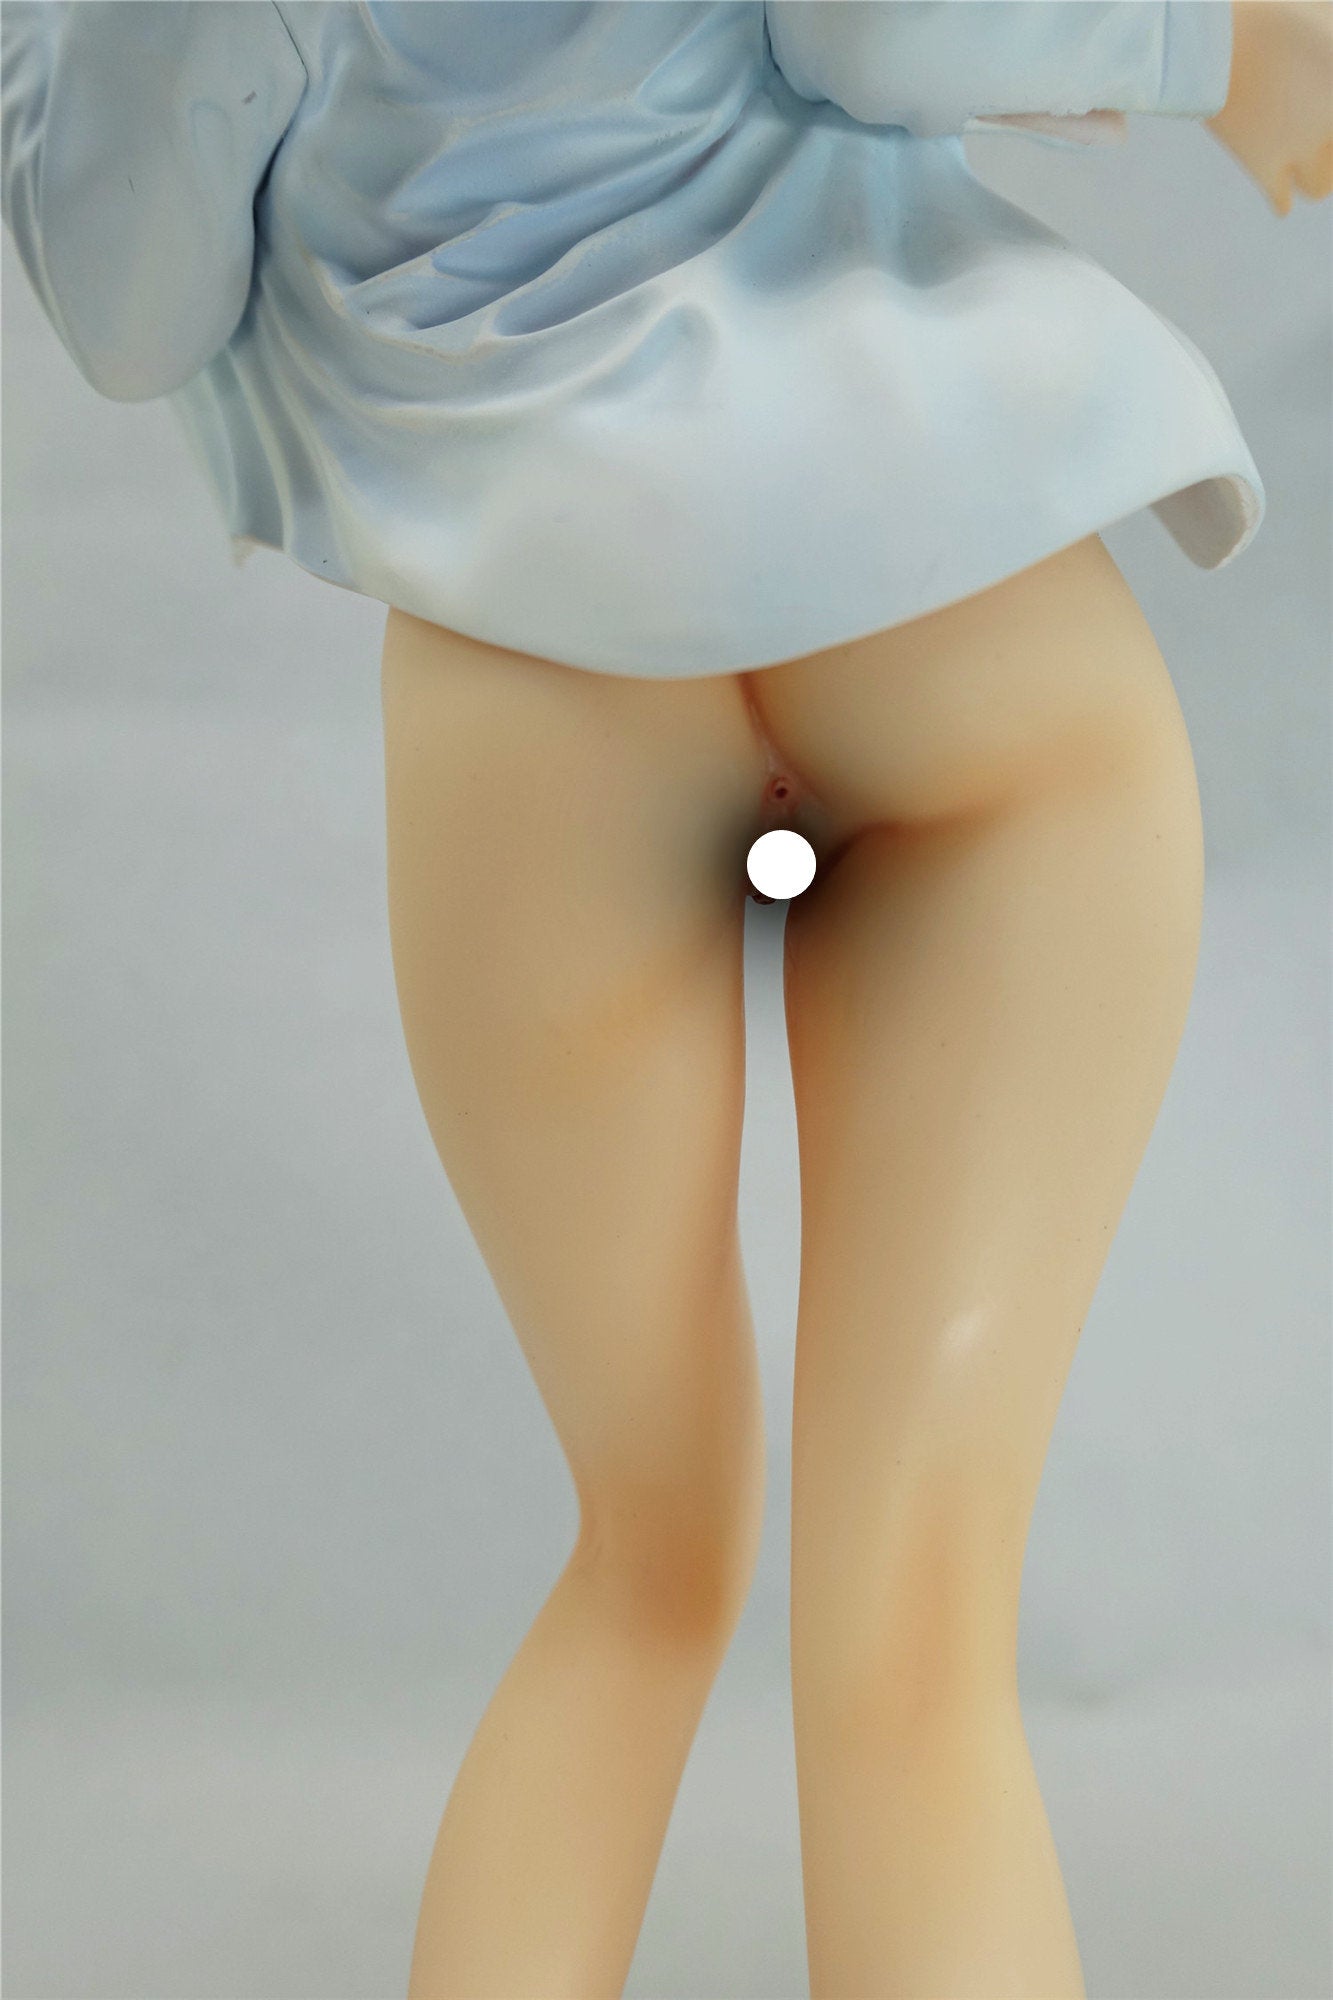 Sex Symbols - Kuromine Aya - 1/6 - Nure JK illustration by Matarou (Daiki Kougyou) naked anime figure